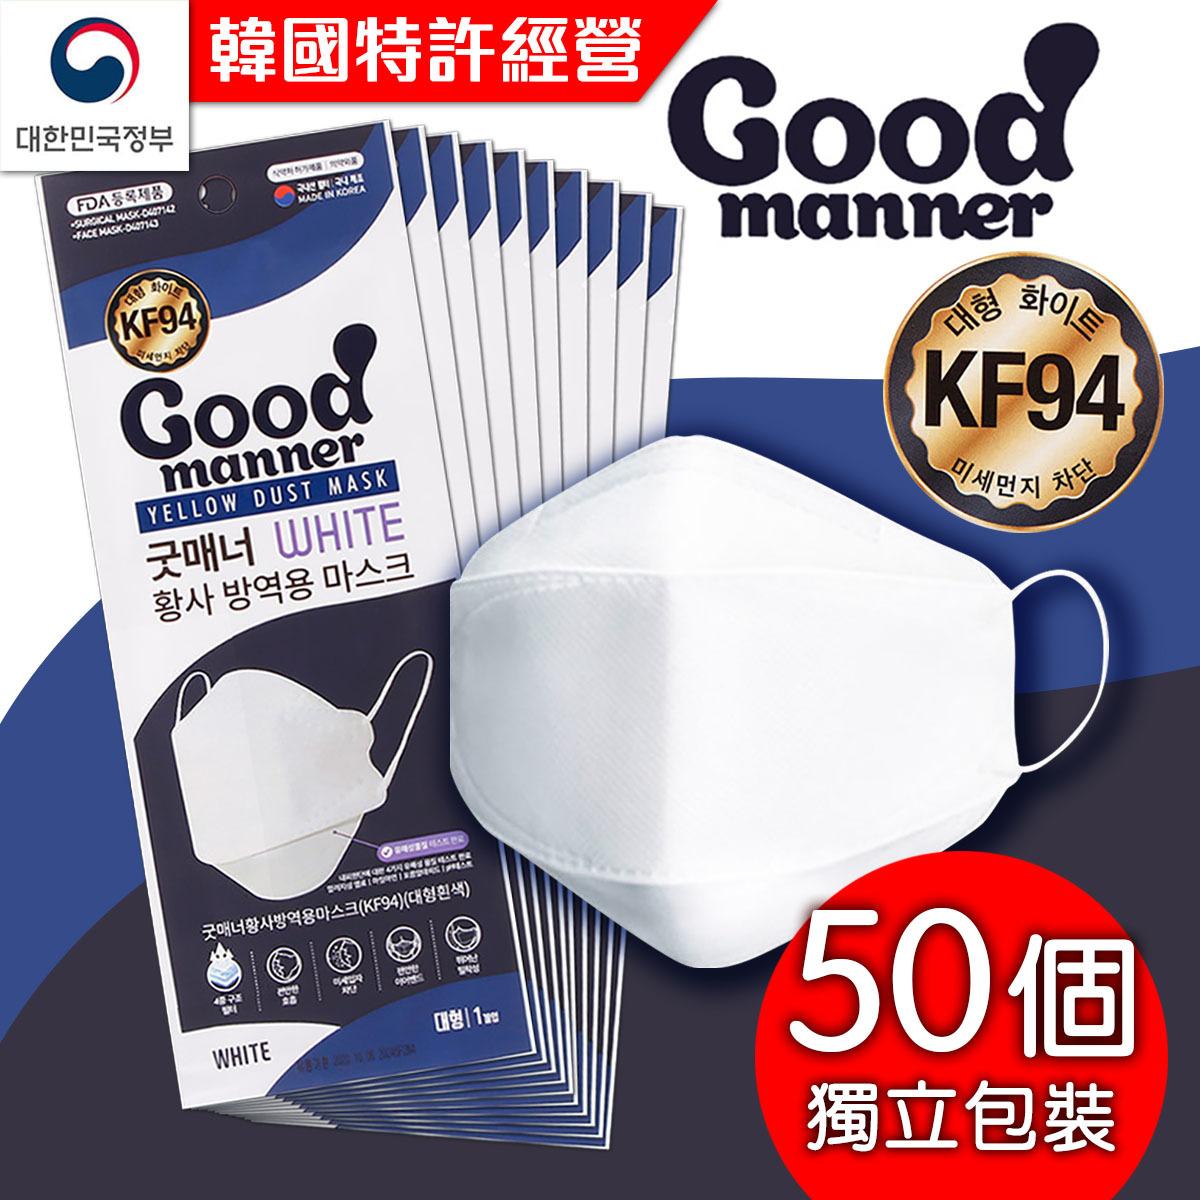 韓國Good Manner KF94 成人口罩 (獨立包裝) - 50個